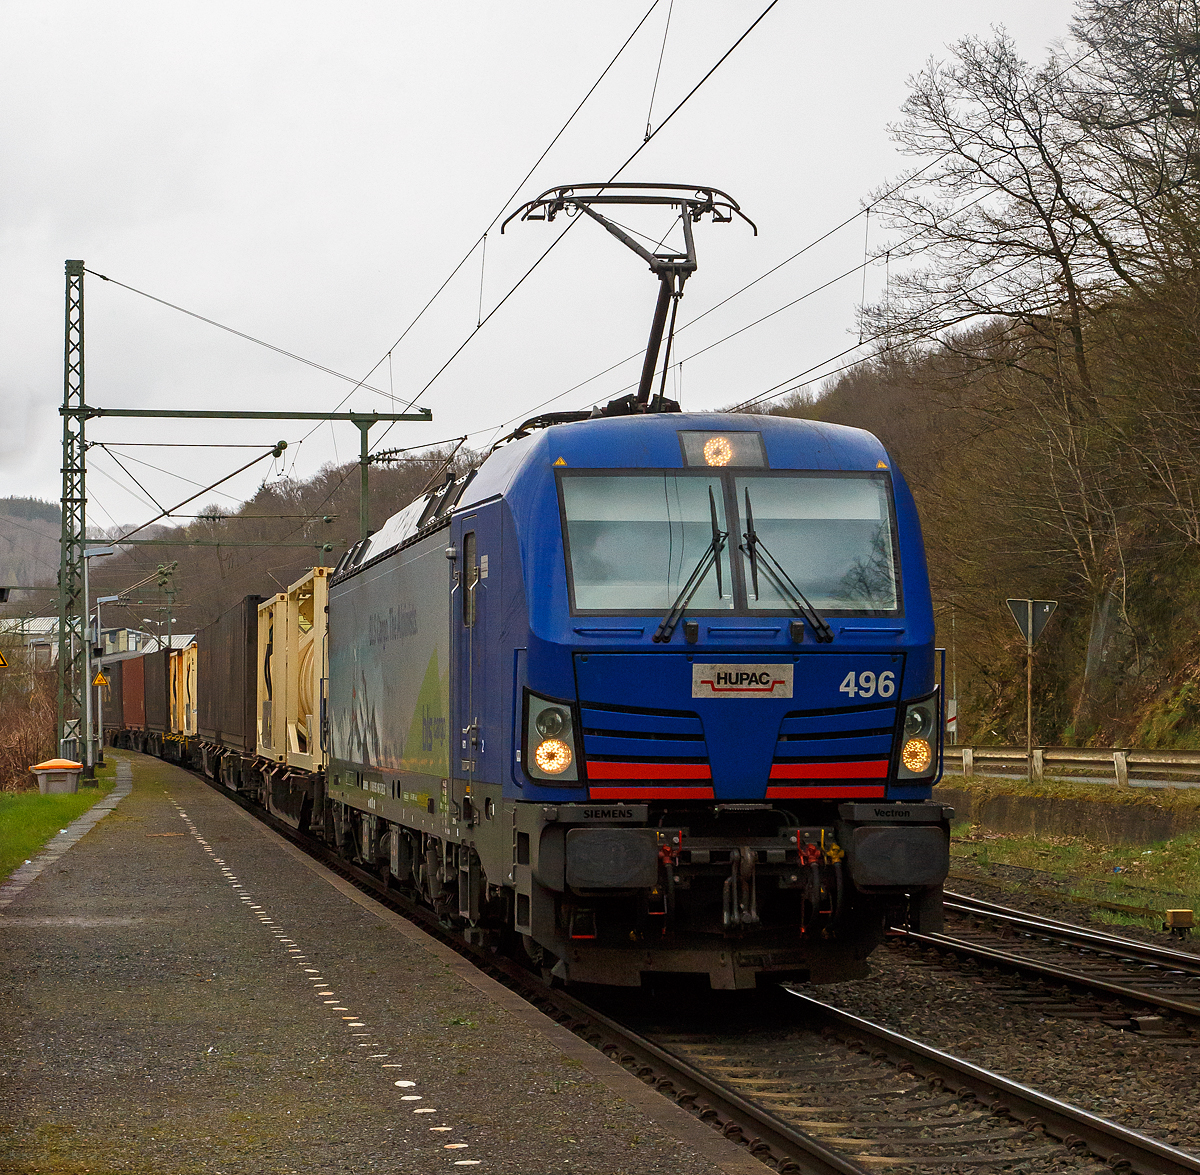 Die HUPAC 496 bzw. BLS Cargo 496 - 193 496 (91 80 6193 496-7 D-BLSC) fährt am 08.04.2022 mit einem KLV-Zug durch den Bf Scheuerfeld (Sieg) in Richtung Köln.

Die Siemens Vectron MS wurde 2018 von Siemens Mobilitiy in München-Allach unter der Fabriknummer 22390 gebaut und an die HUPAC SA. geliefert. Eigentümer der Lok ist die HUPAC Intermodal SA (Chiasso) und wurde bei der BLS Cargo eingestellt und/oder vermietet. Sie hat die Zulassungen für Deutschland, Österreich, Schweiz, Italien und die Niederlande (D, A, CH, I, NL). Die Vectron MS hat eine Leistung von 6,4 MW und eine Höchstgeschwindigkeit von 160 km/h.